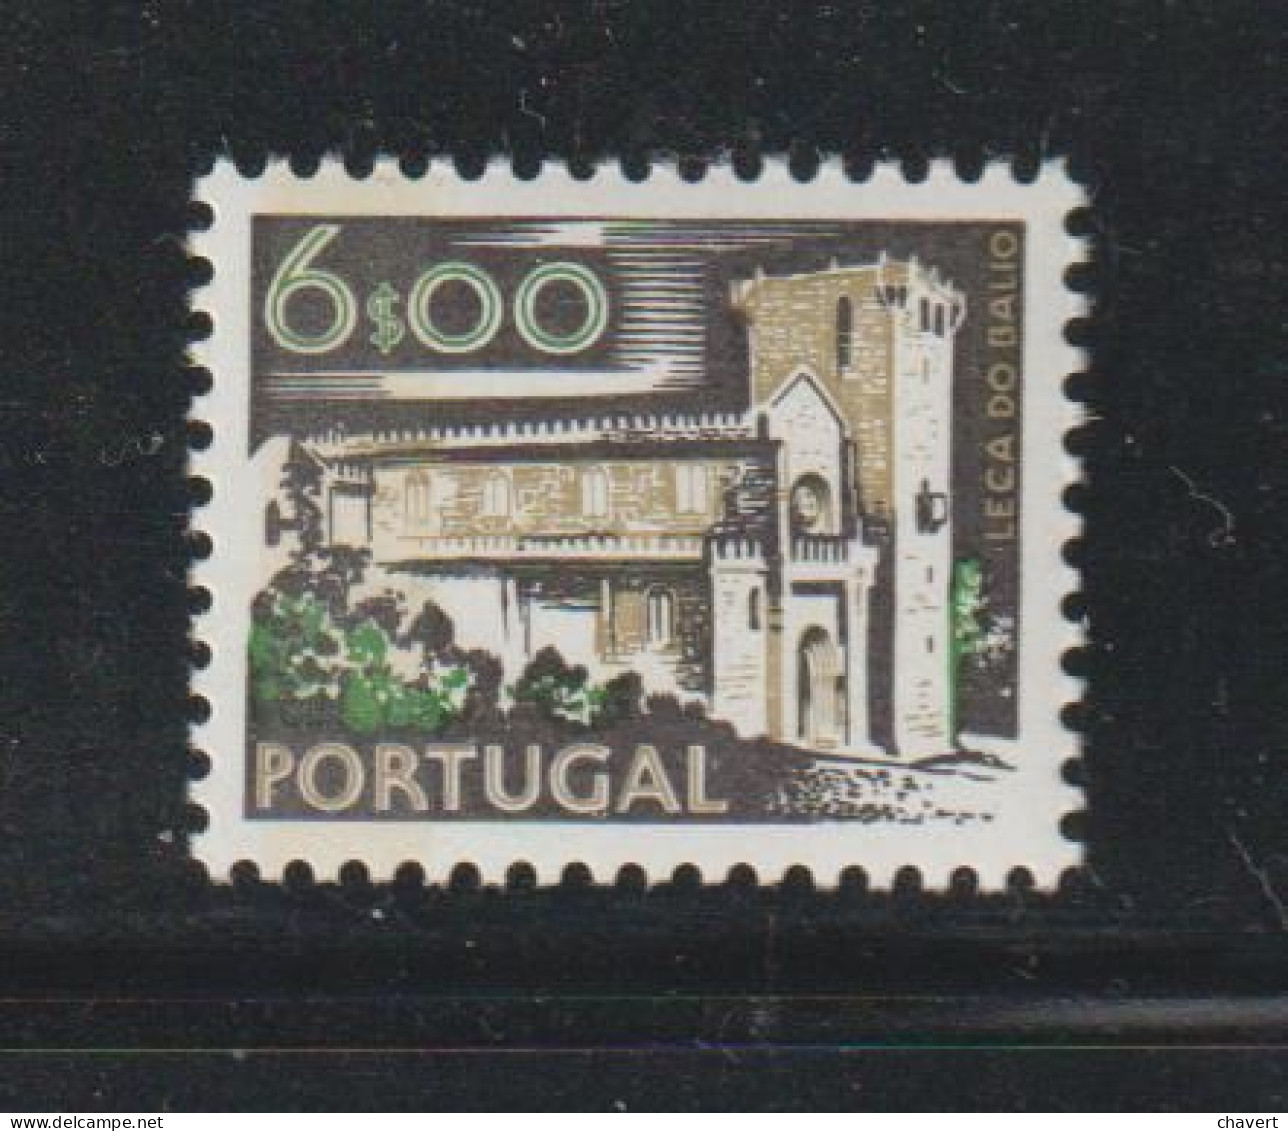 Portugal - YT N° 1226a Neuf** Avec Bande De Phosphore Cote 30€ - Ungebraucht